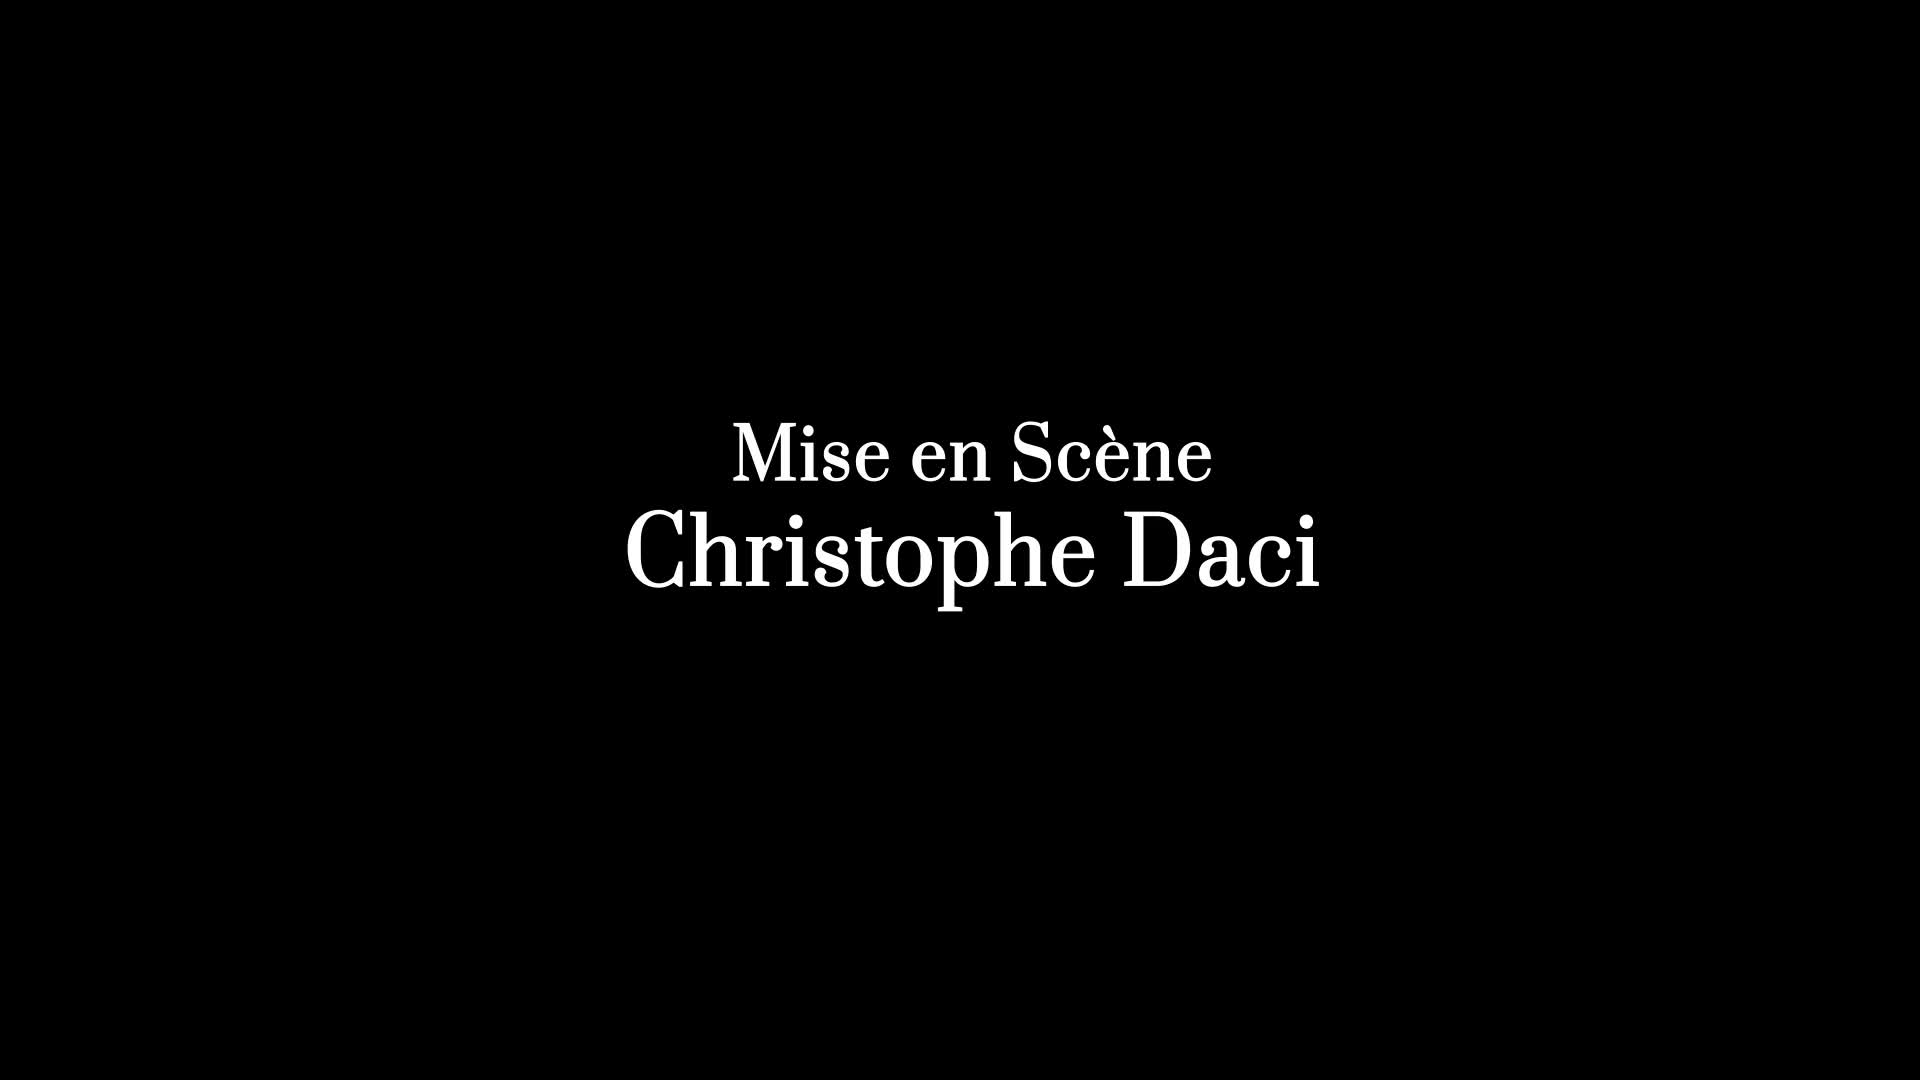 Vidéo "Grand-peur et misère du IIIe Reich" - Bertolt Brecht/Christophe Daci - Bande-annonce